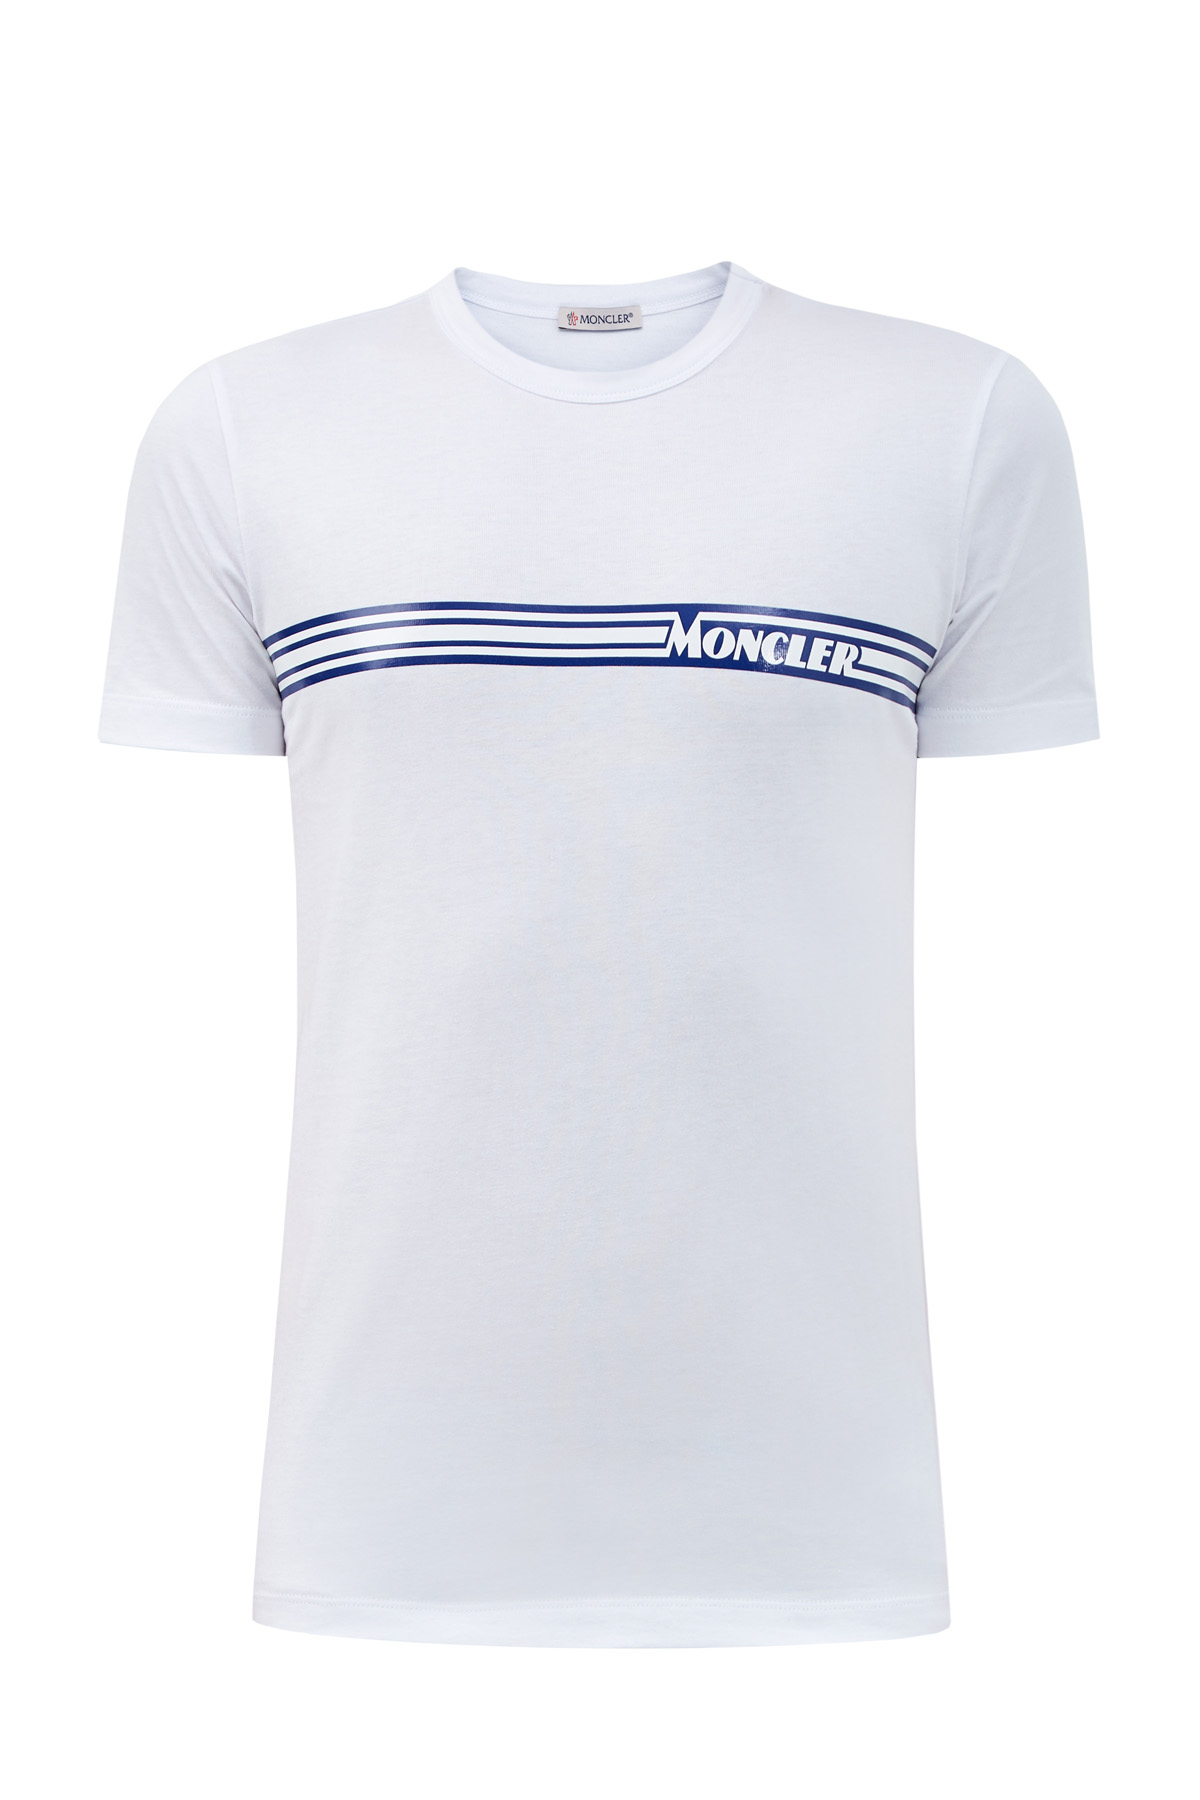 Белая футболка из хлопка джерси с глянцевой аппликацией MONCLER, цвет белый, размер 2XL - фото 1